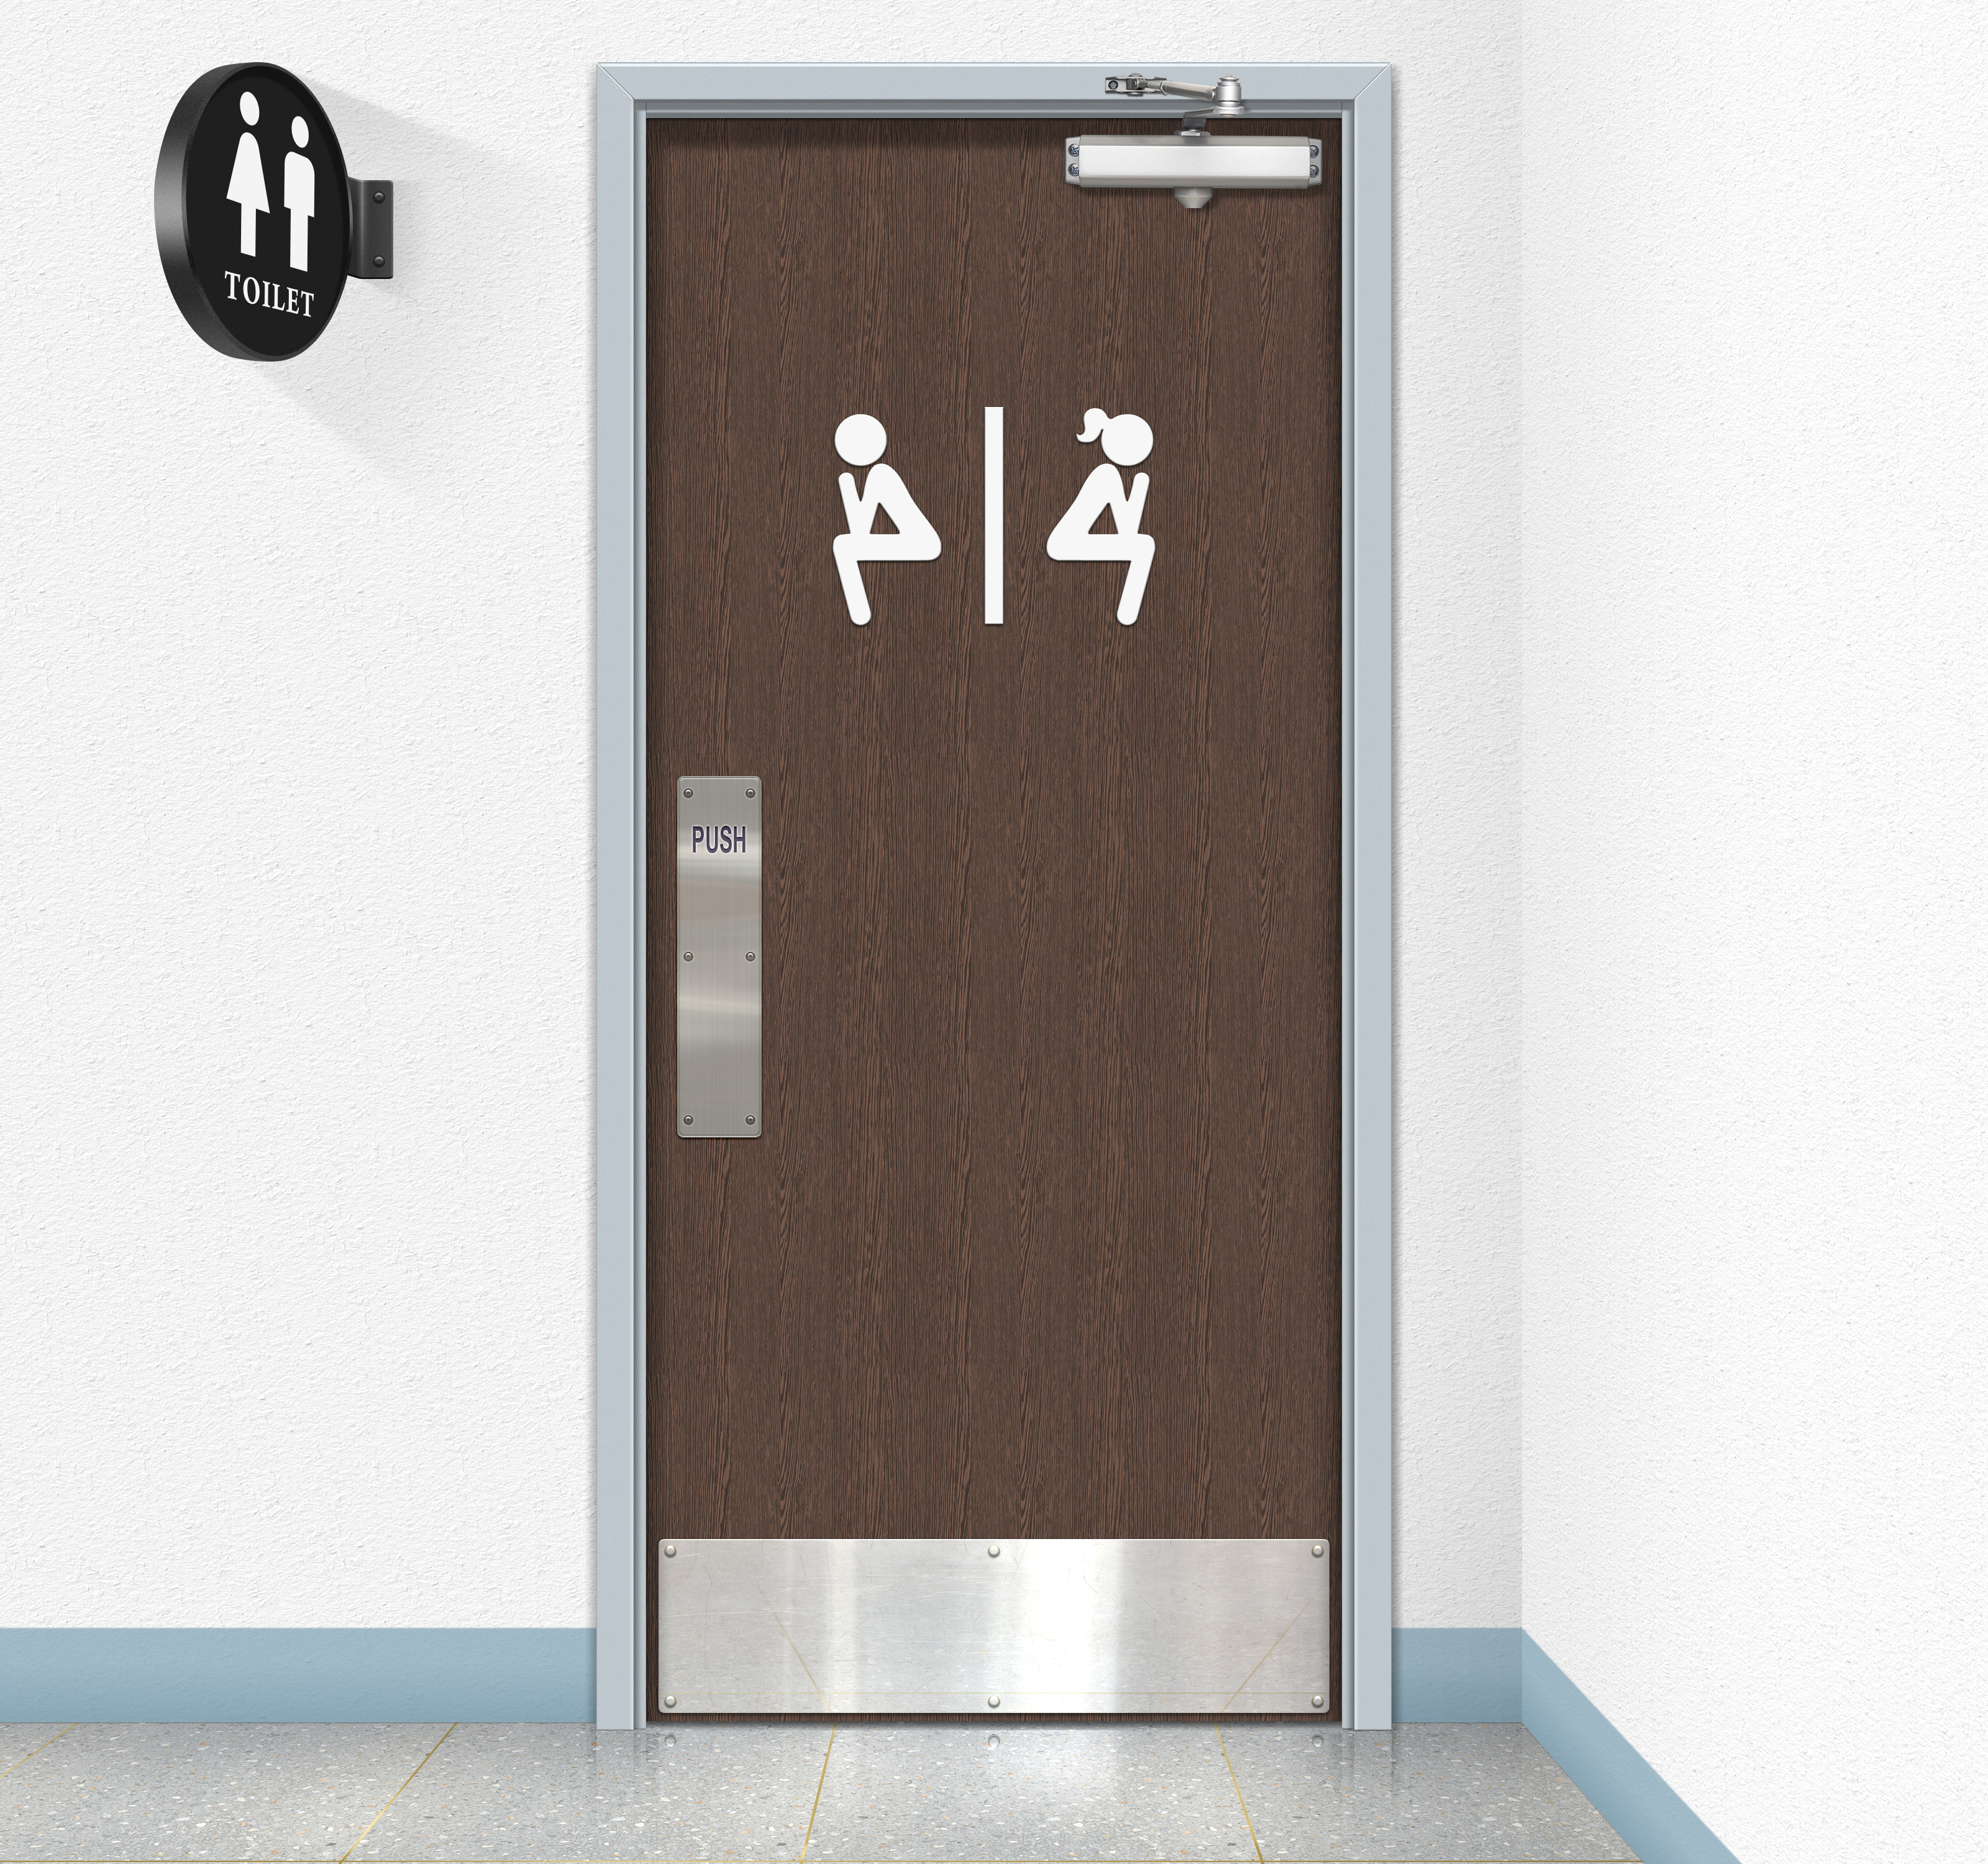 General 3200x3000 public restroom toilets humor sign door